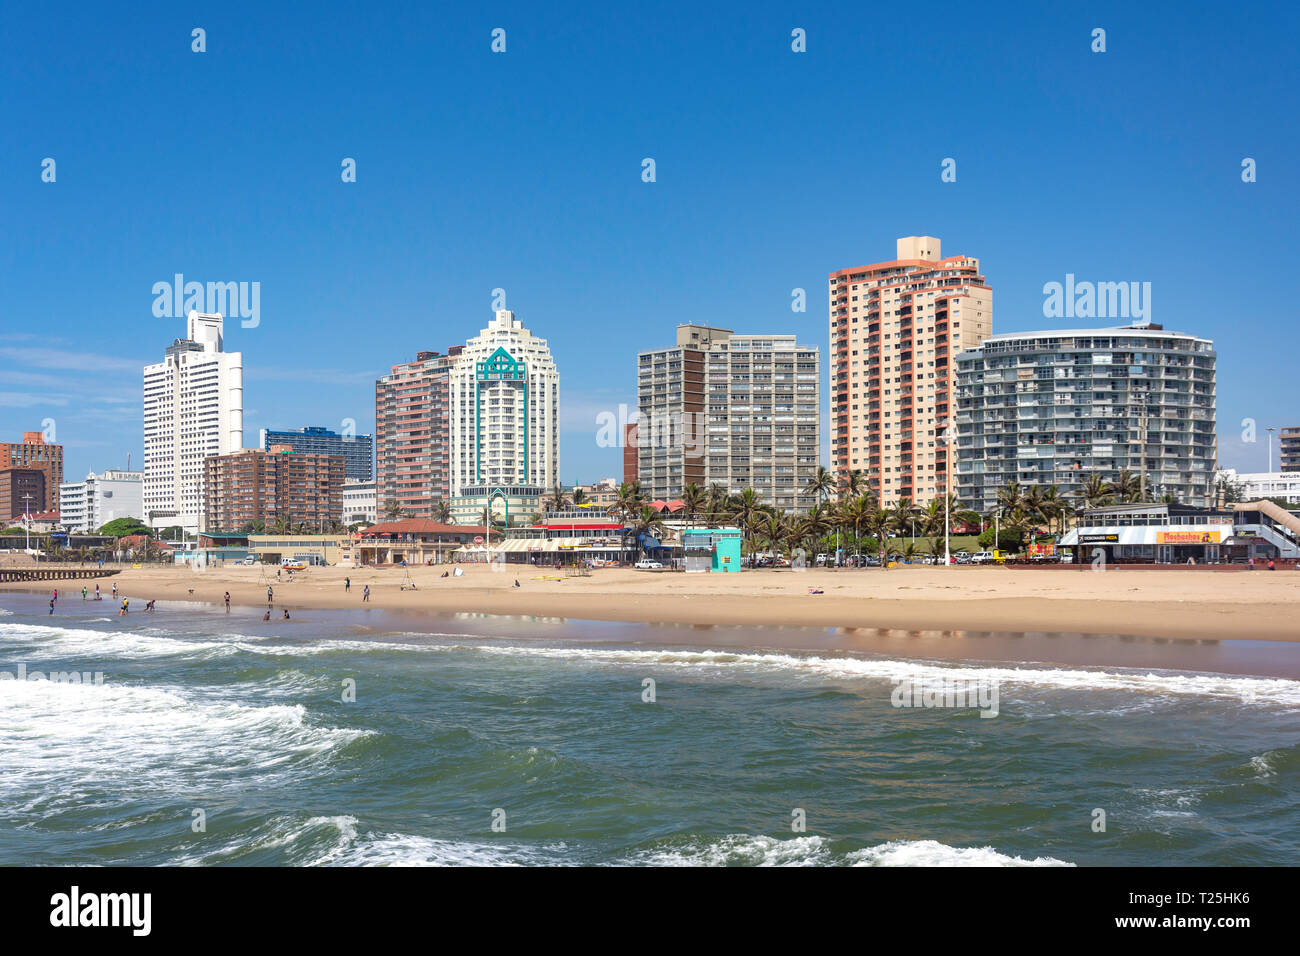 Les bâtiments de grande hauteur en bord de plage du nord, Durban, KwaZulu-Natal, Afrique du Sud Banque D'Images